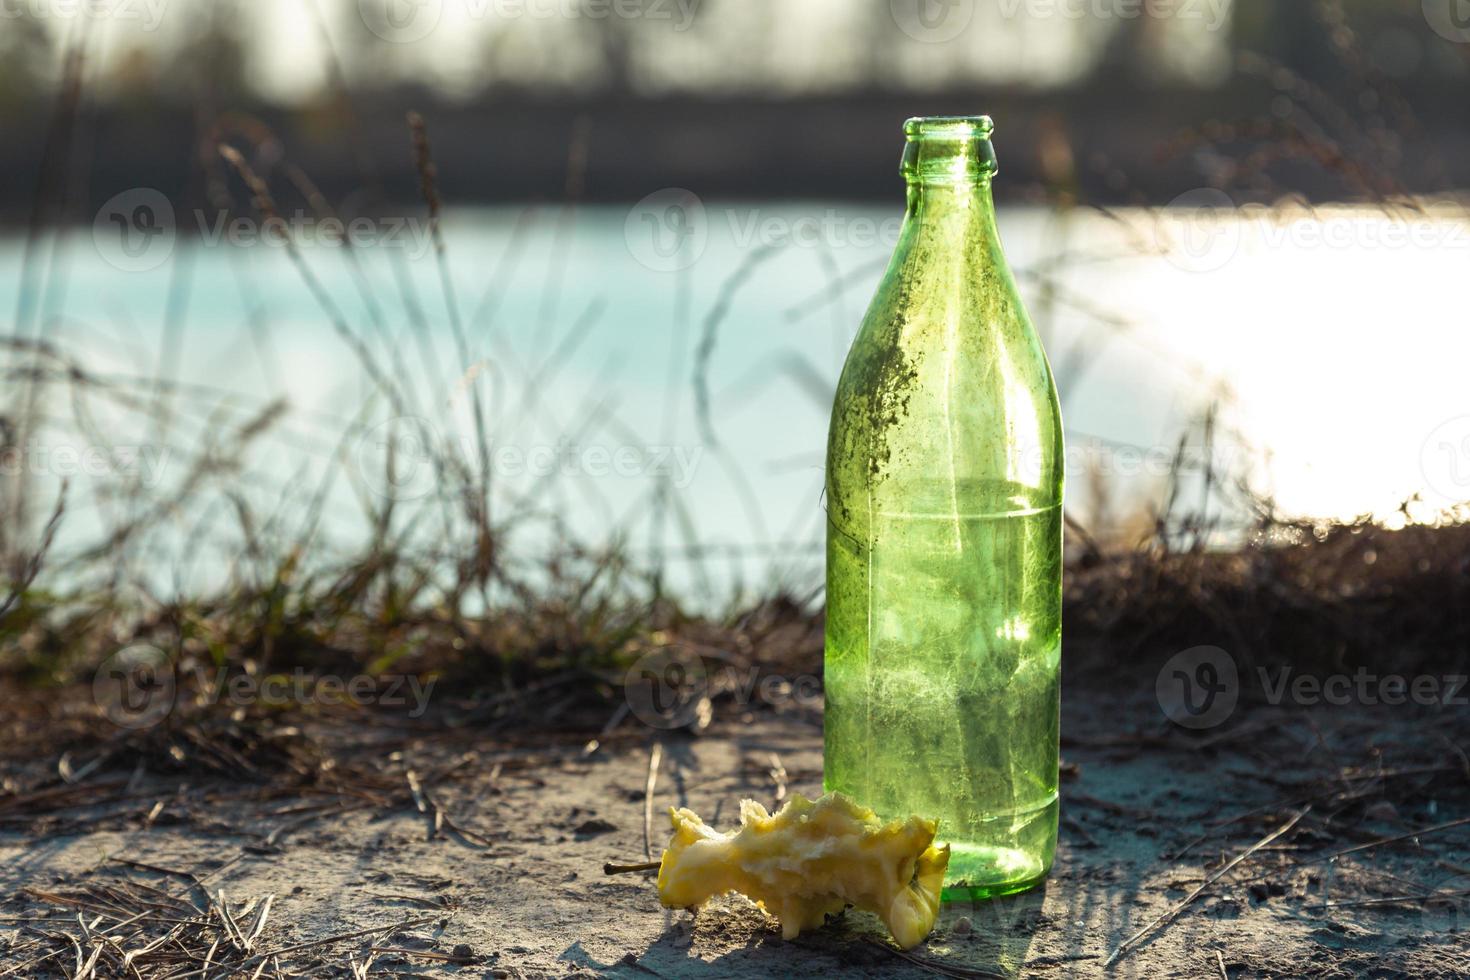 vuile glazen fles in het bos naast een appelstomp foto